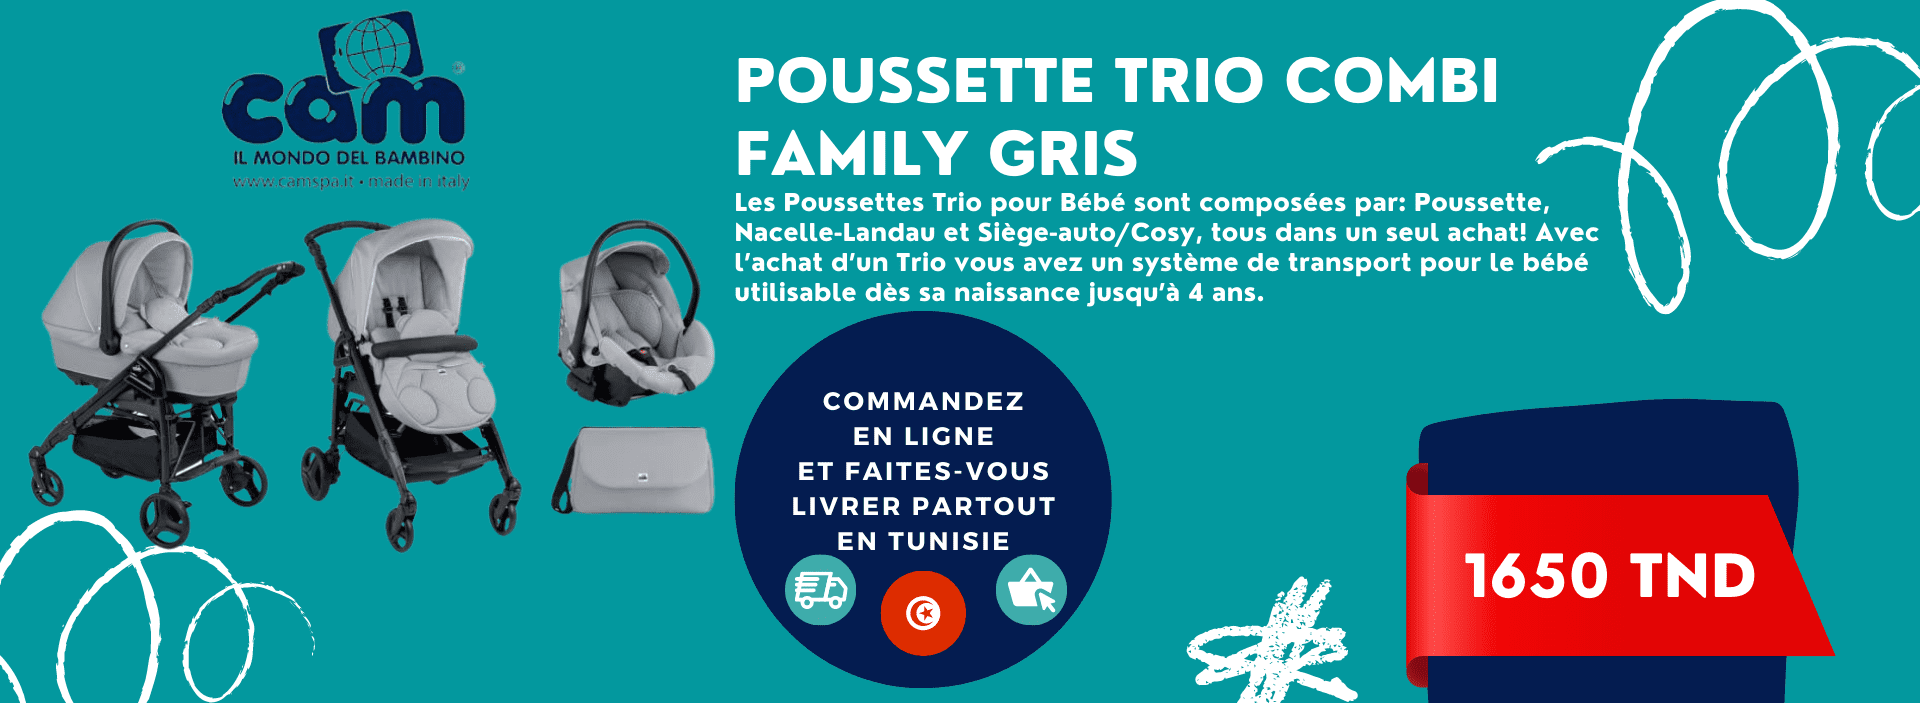 Poussette Trio combi family gris